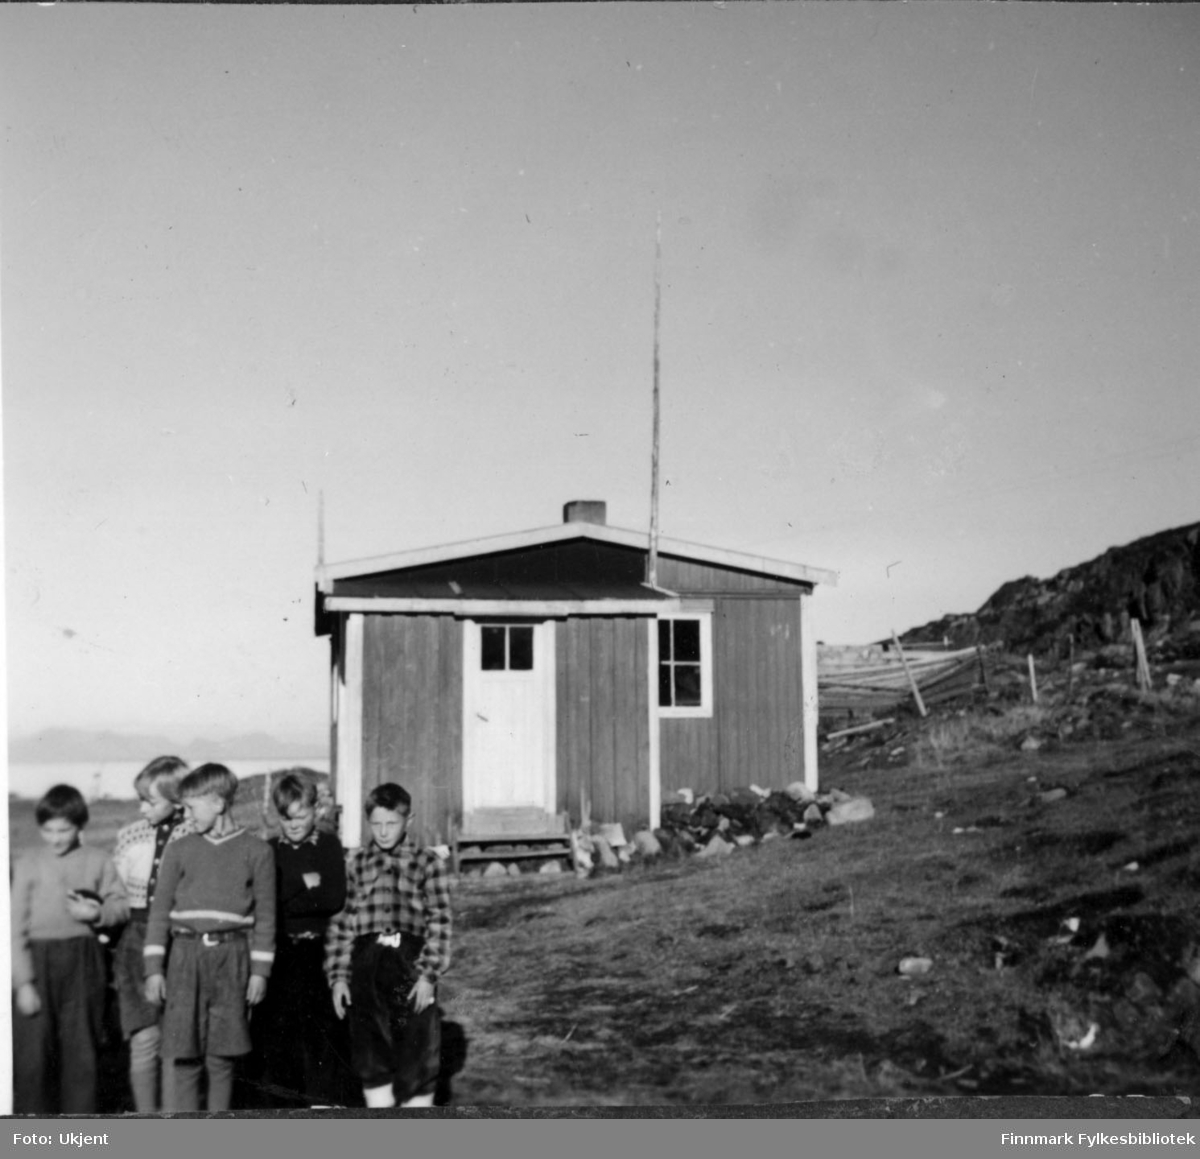 Elever ved skolen i Nuvsvåg 1952. Fra venstre: Per Nilsen, Henning Pettersen, Finn Rydheim, Evald Frisk og Adler Bårdsen. Guttene er kledd i knebukser, bukser, gensere og belter. Huset i bakgrunnen er en lærerbolig. Man kan også se gjerder og havet i bakgrunnen.